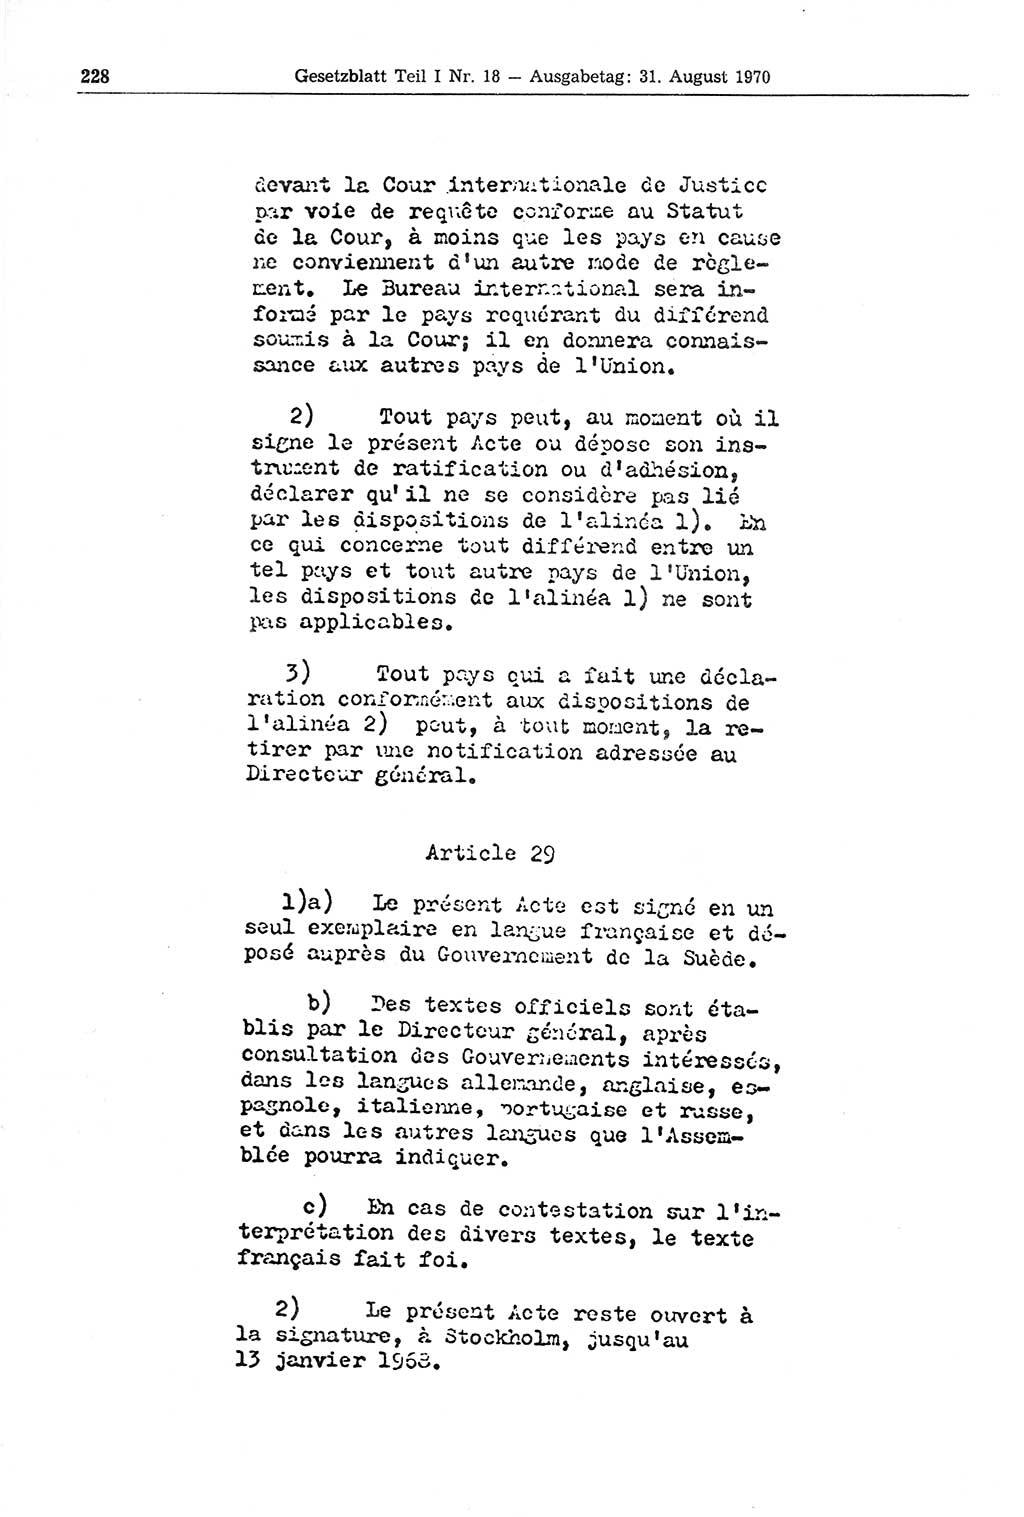 Gesetzblatt (GBl.) der Deutschen Demokratischen Republik (DDR) Teil Ⅰ 1970, Seite 228 (GBl. DDR Ⅰ 1970, S. 228)